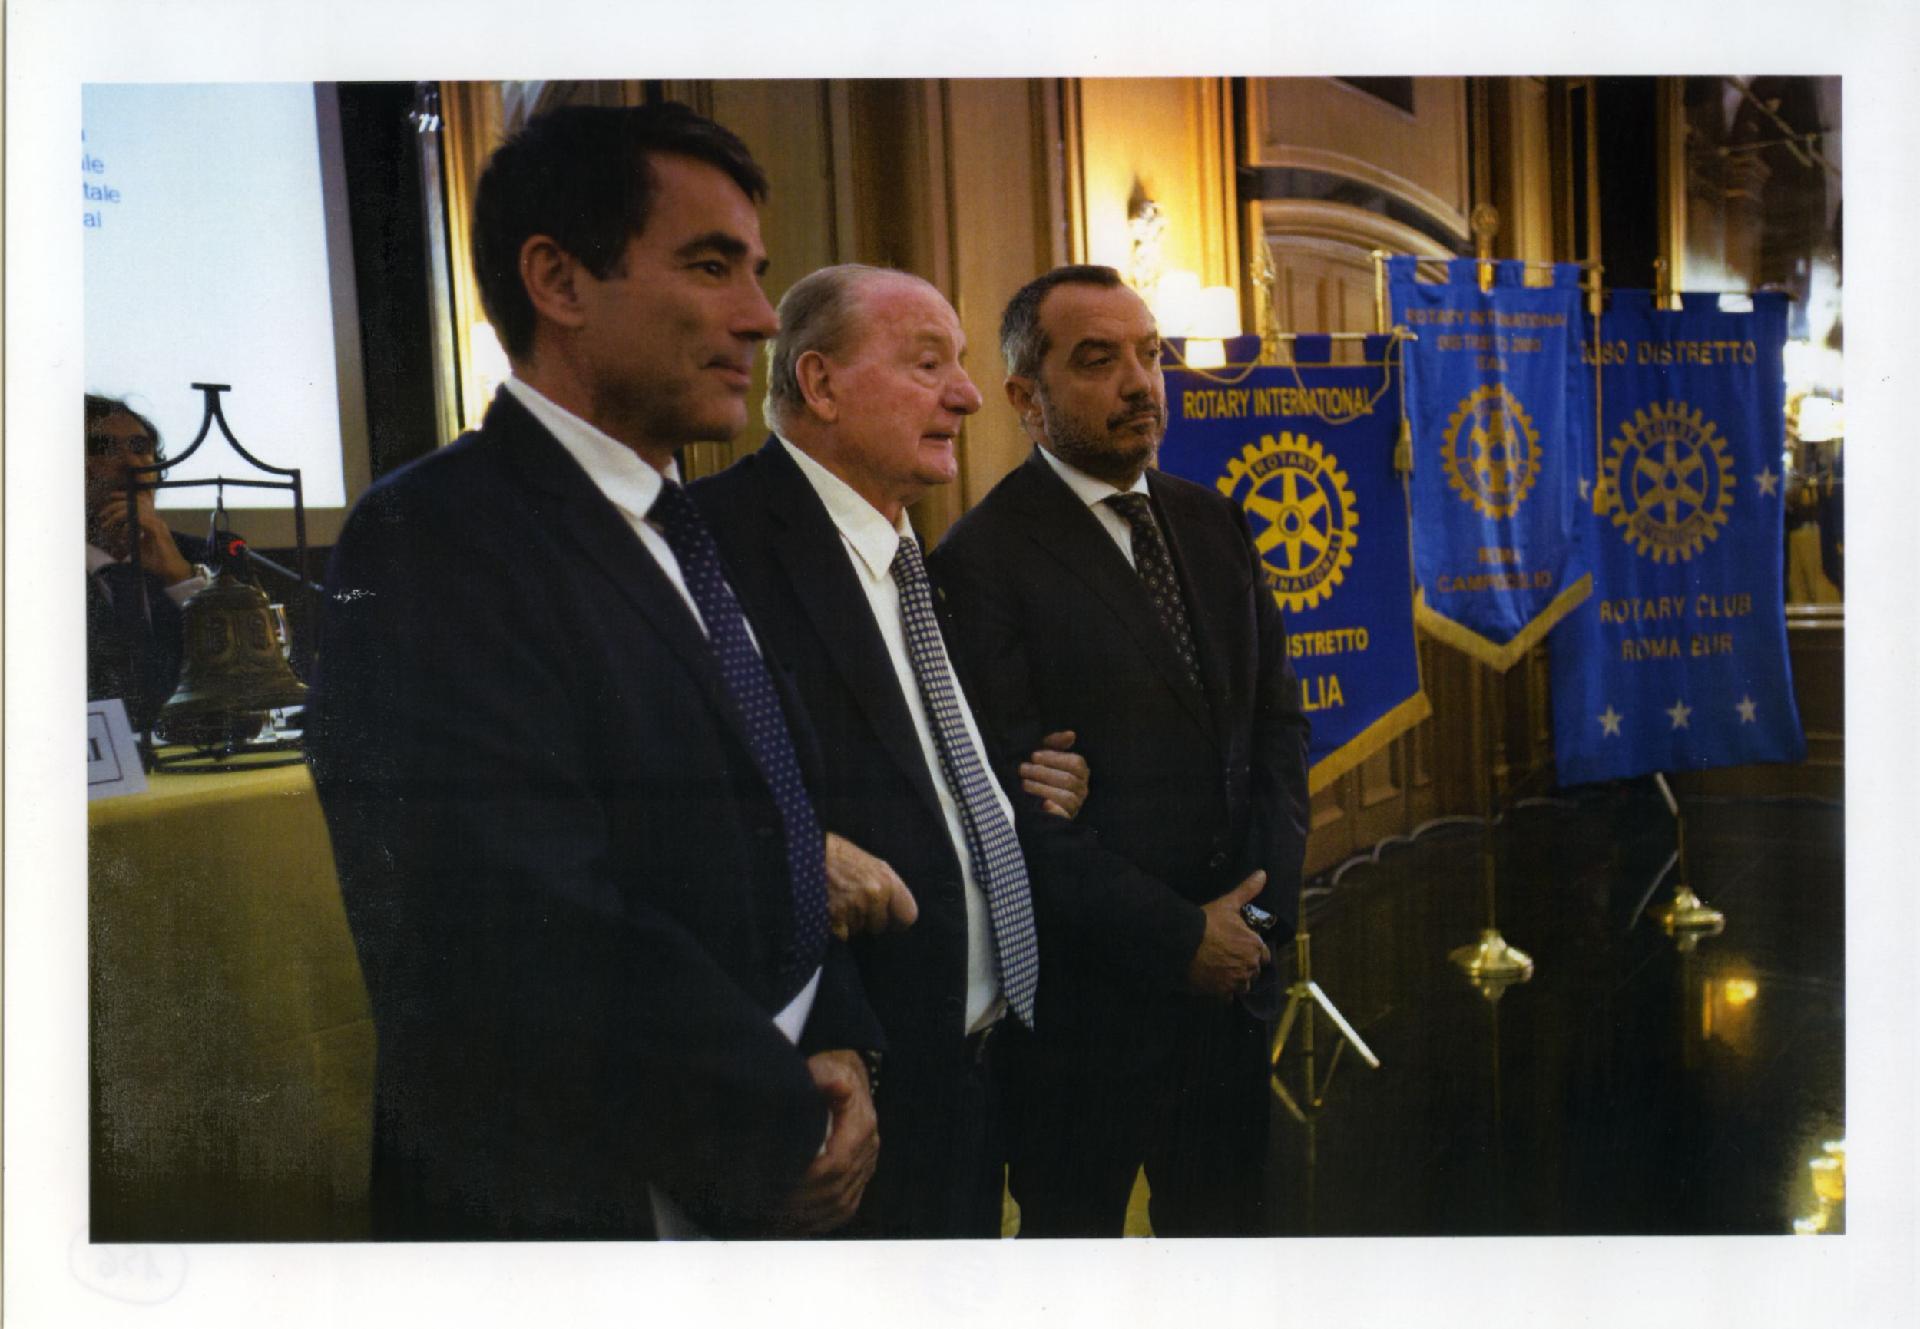 Gianni Bisiach con Franco Di Mare e Duilio Giammaria alla Caserma Castro Pretorio di Roma nel 2015 in occasione del premio &quot;Rotary Club Carlo Casalegno&quot;